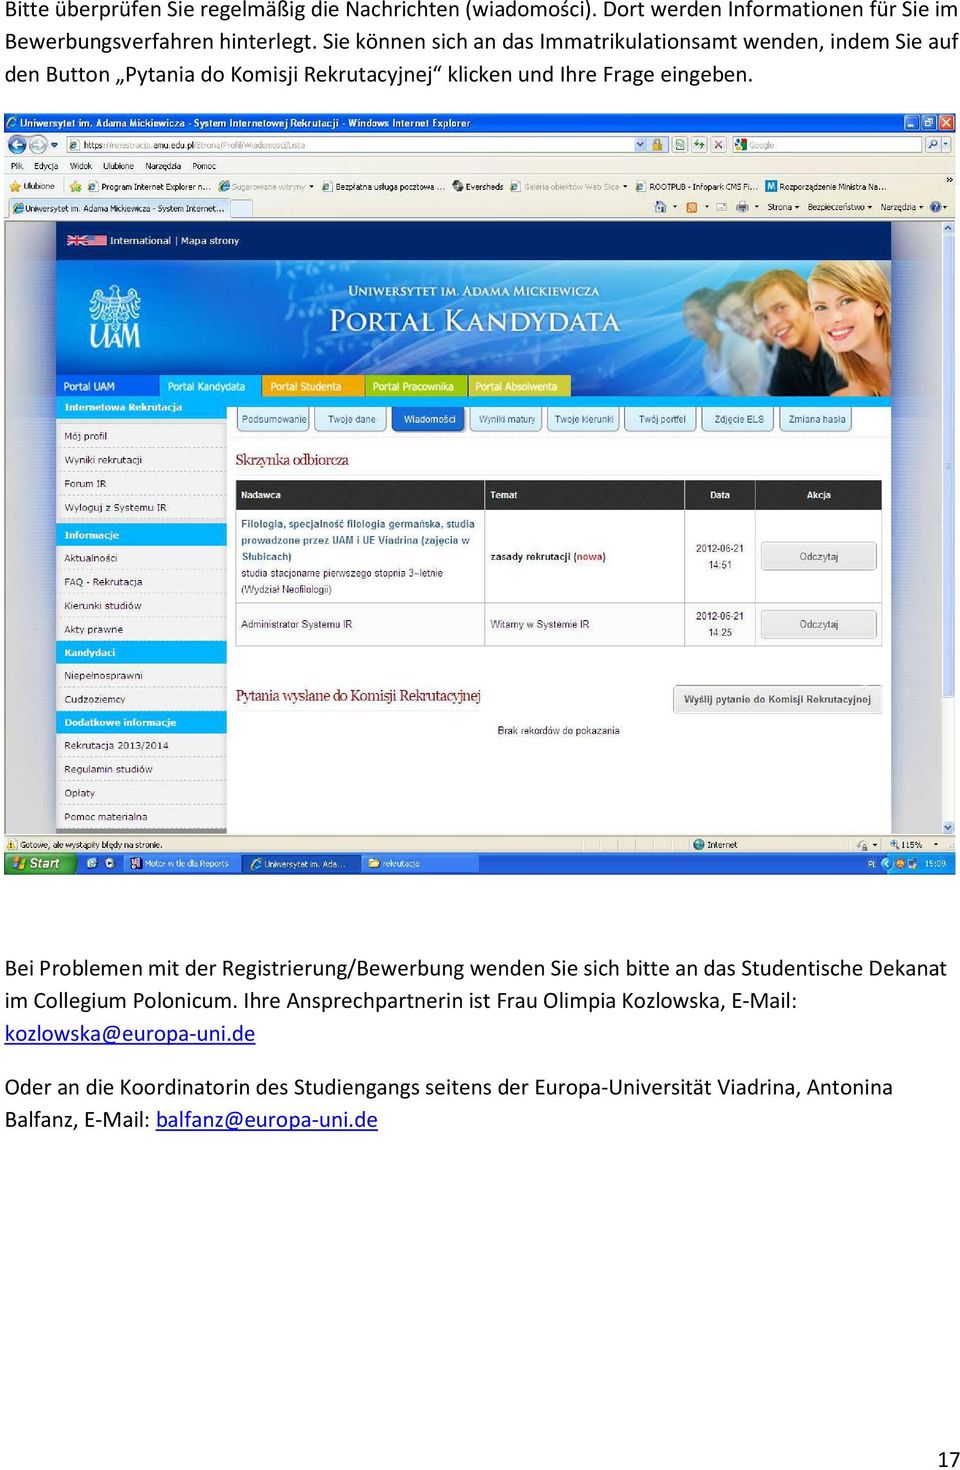 Bei Problemen mit der Registrierung/Bewerbung wenden Sie sich bitte an das Studentische Dekanat im Collegium Polonicum.